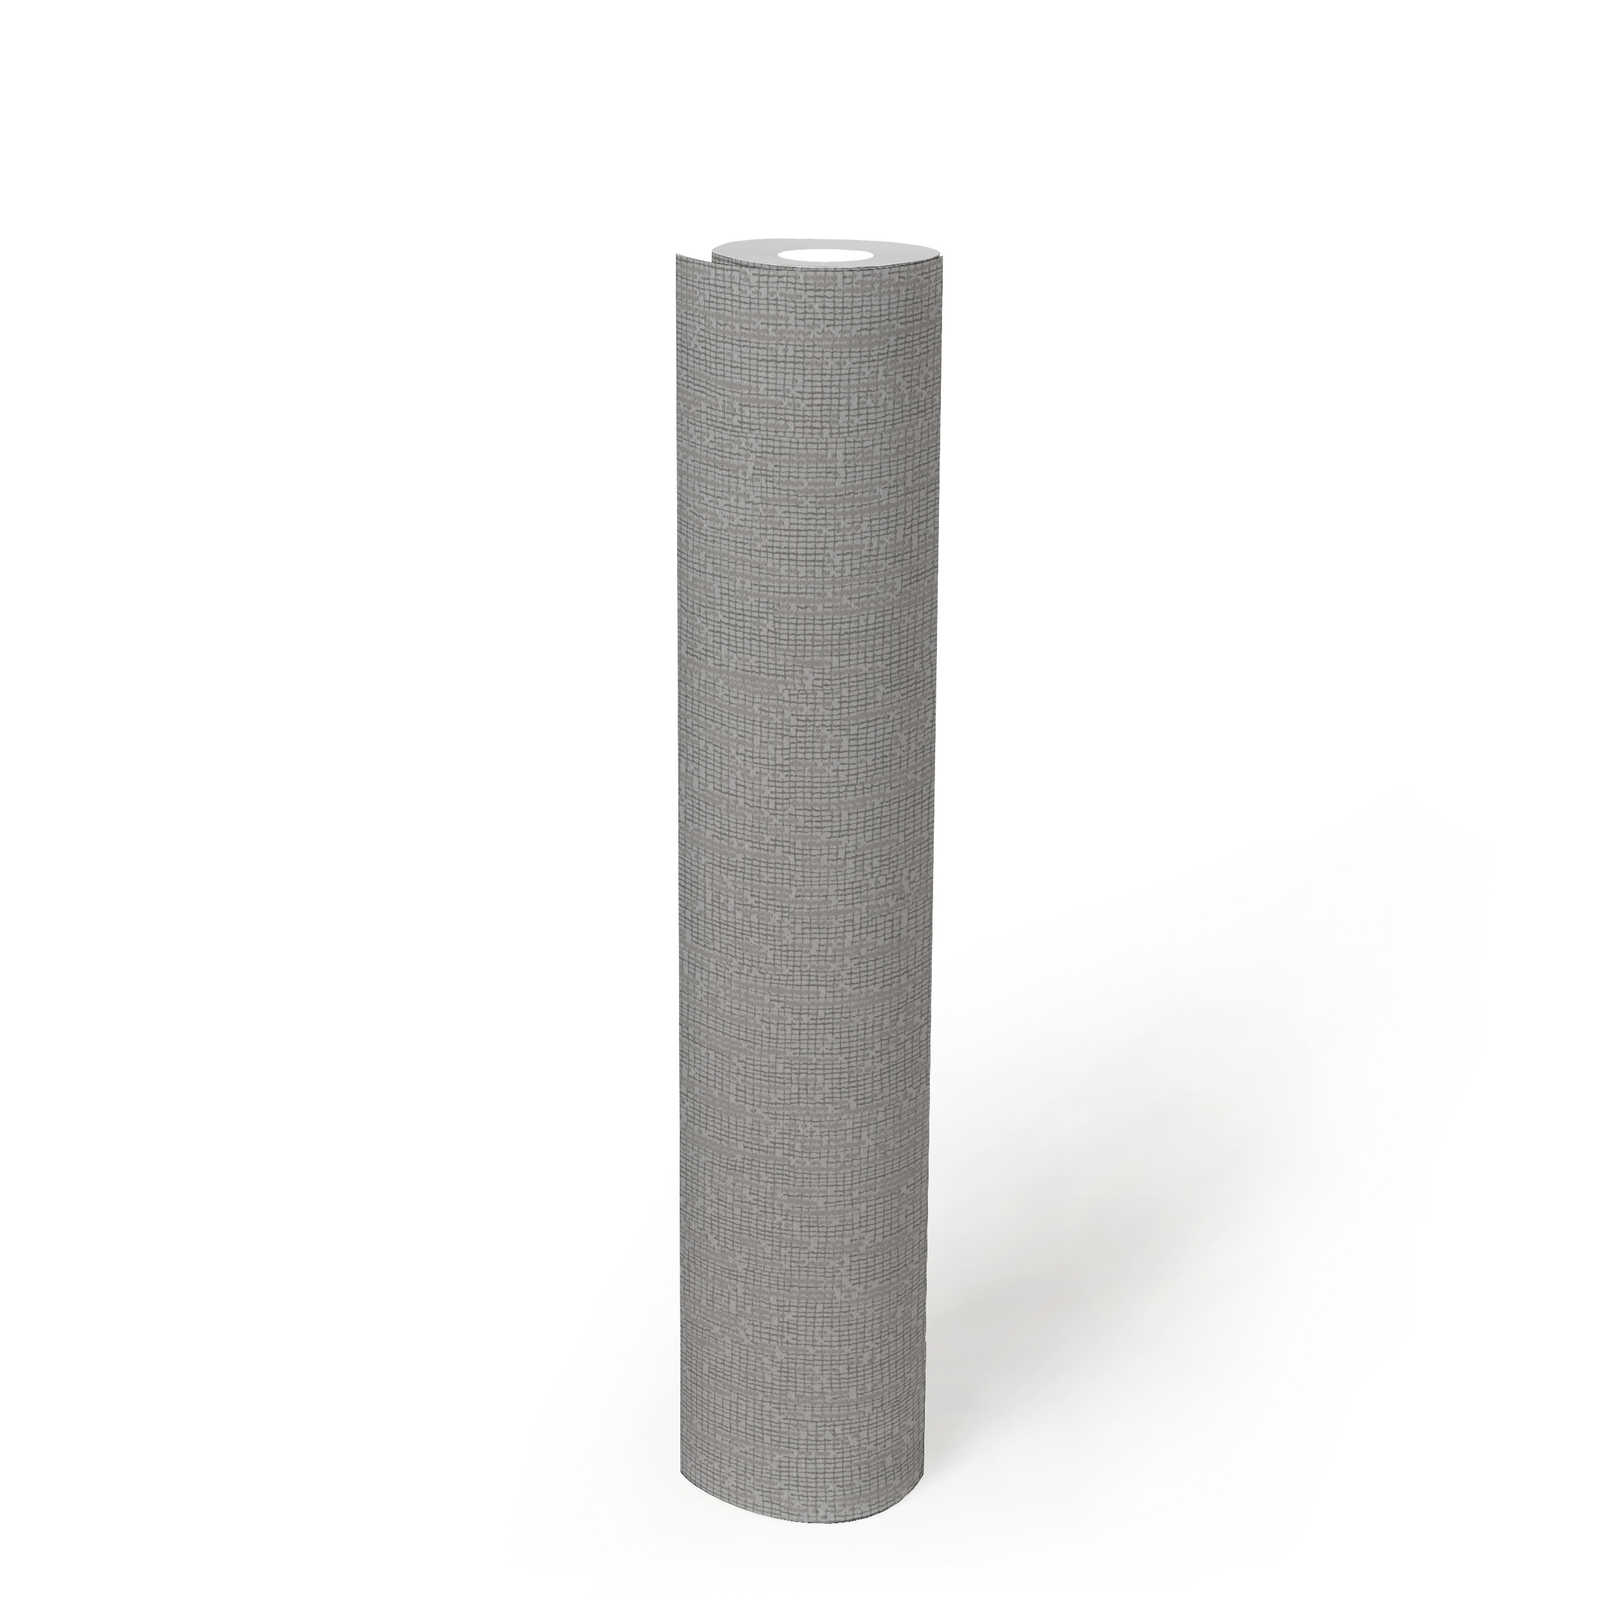             Tapete einfarbig mit Strukturdetails, Scandi Stile – Grau
        